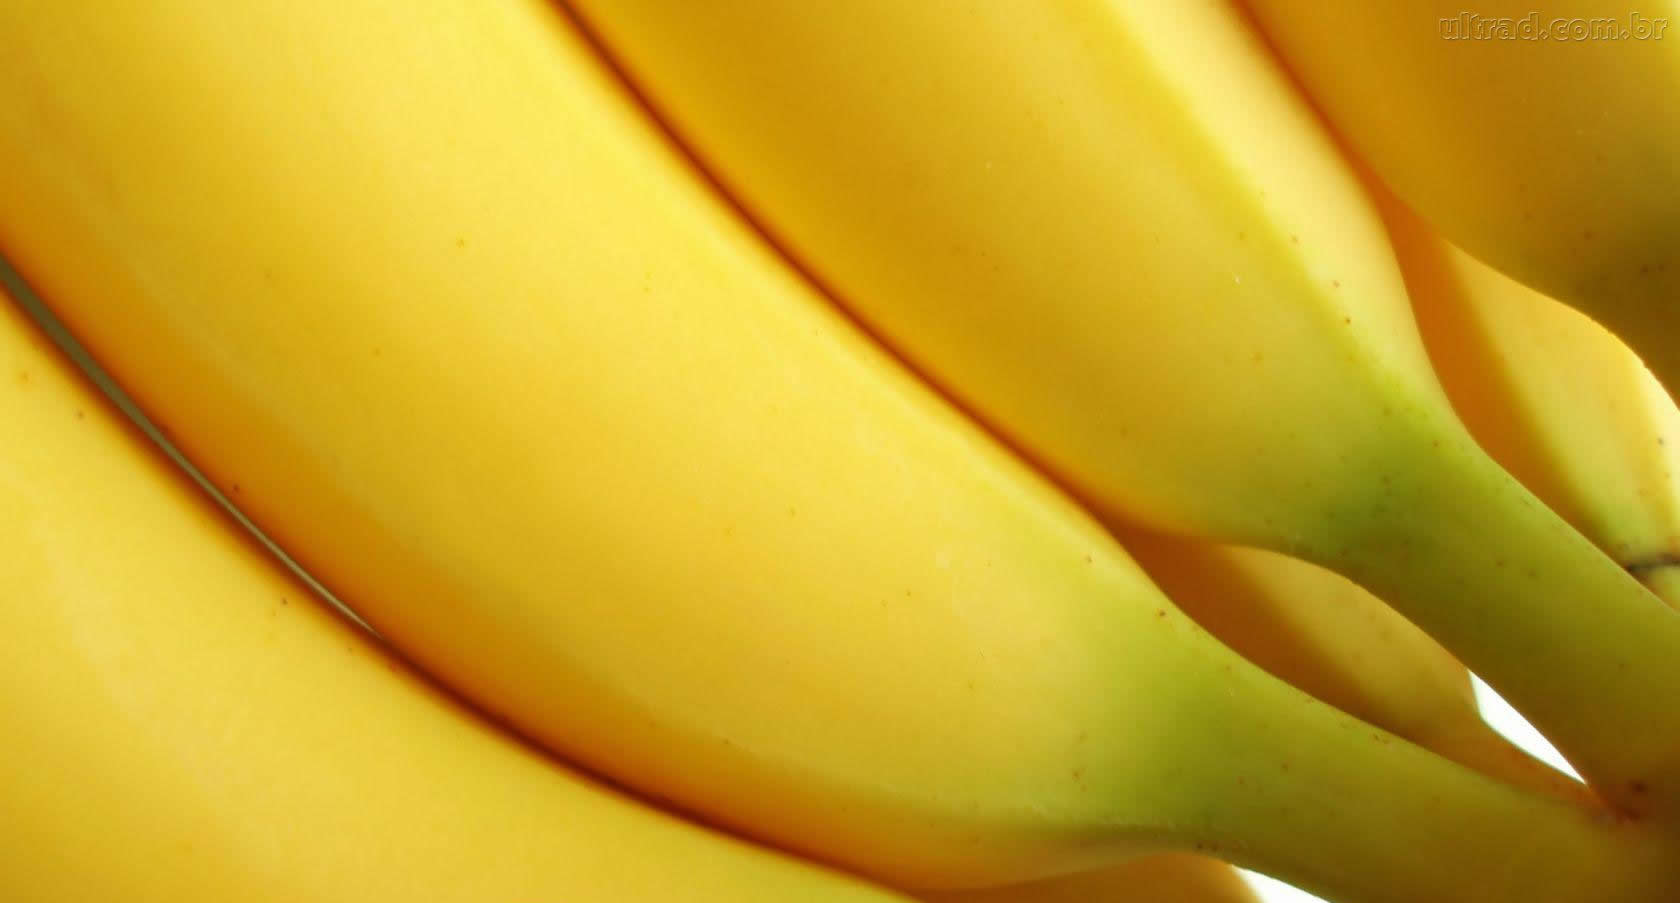 Fruits, Bananas, Download Photo, Banana Wallpaper, - Banana Wallpaper Hd - HD Wallpaper 